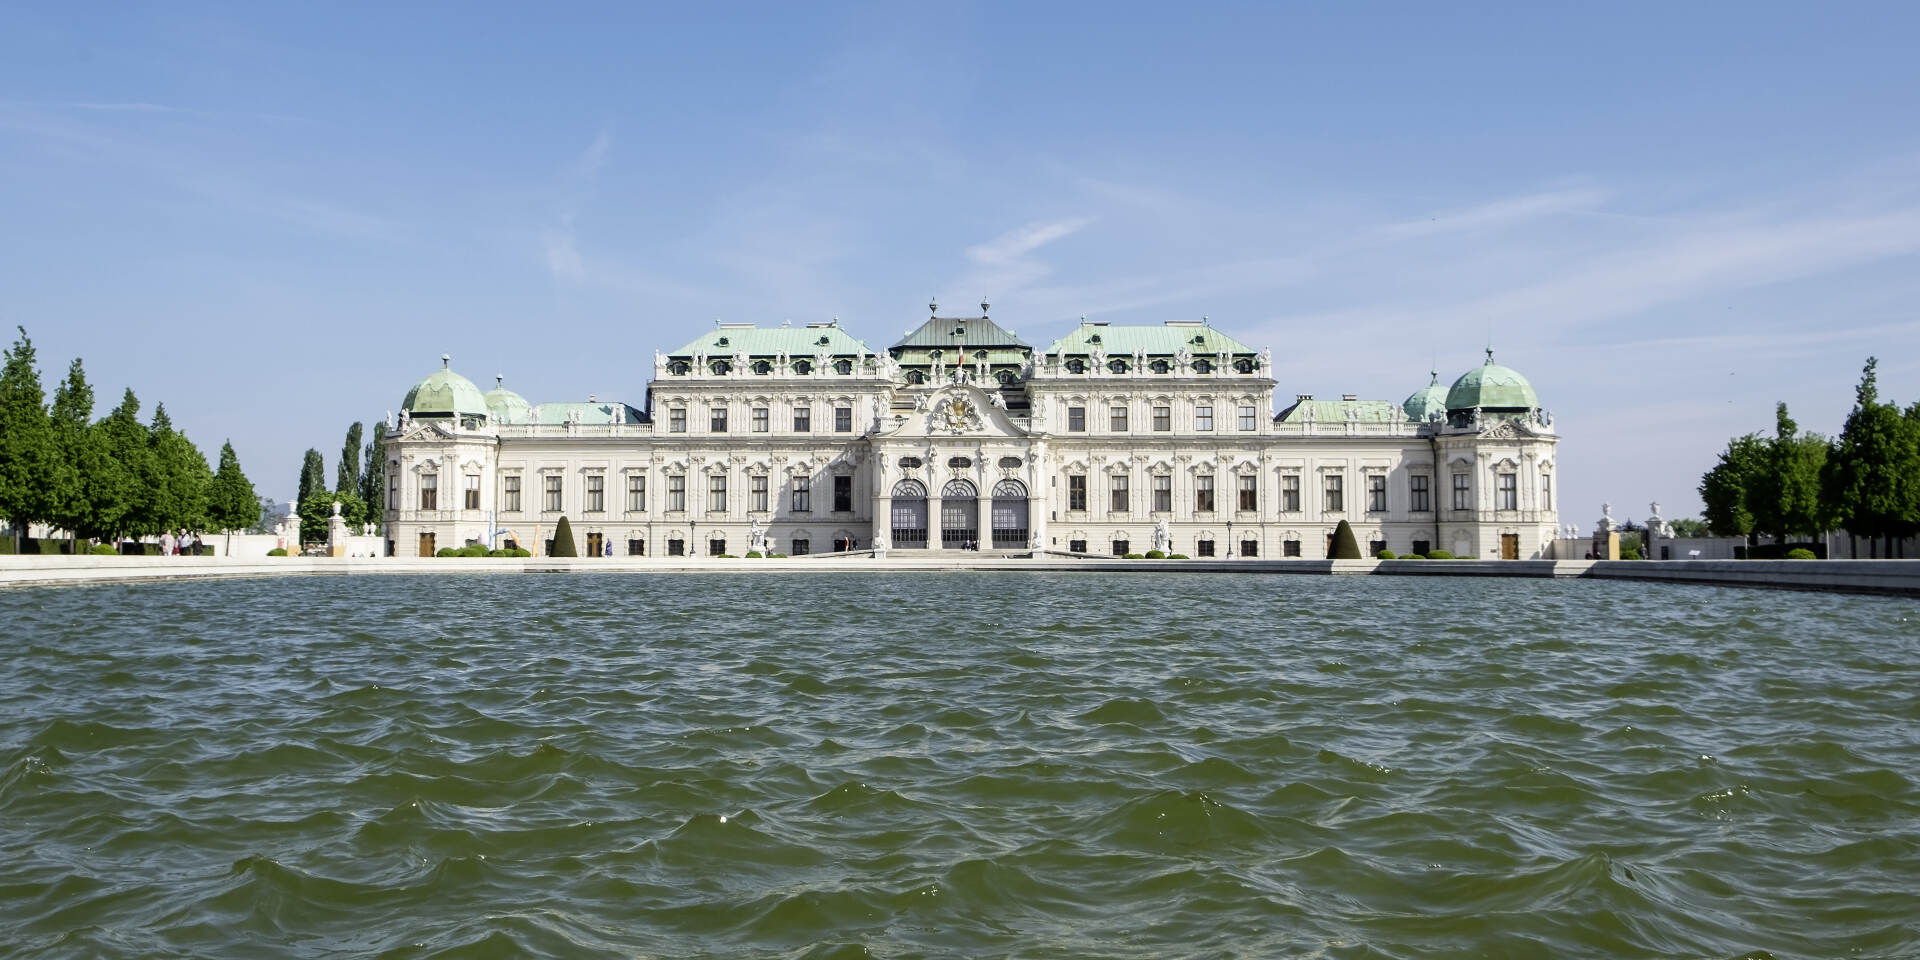 Belvedere Palace in Vienna © WienTourismus | Christian Stemper